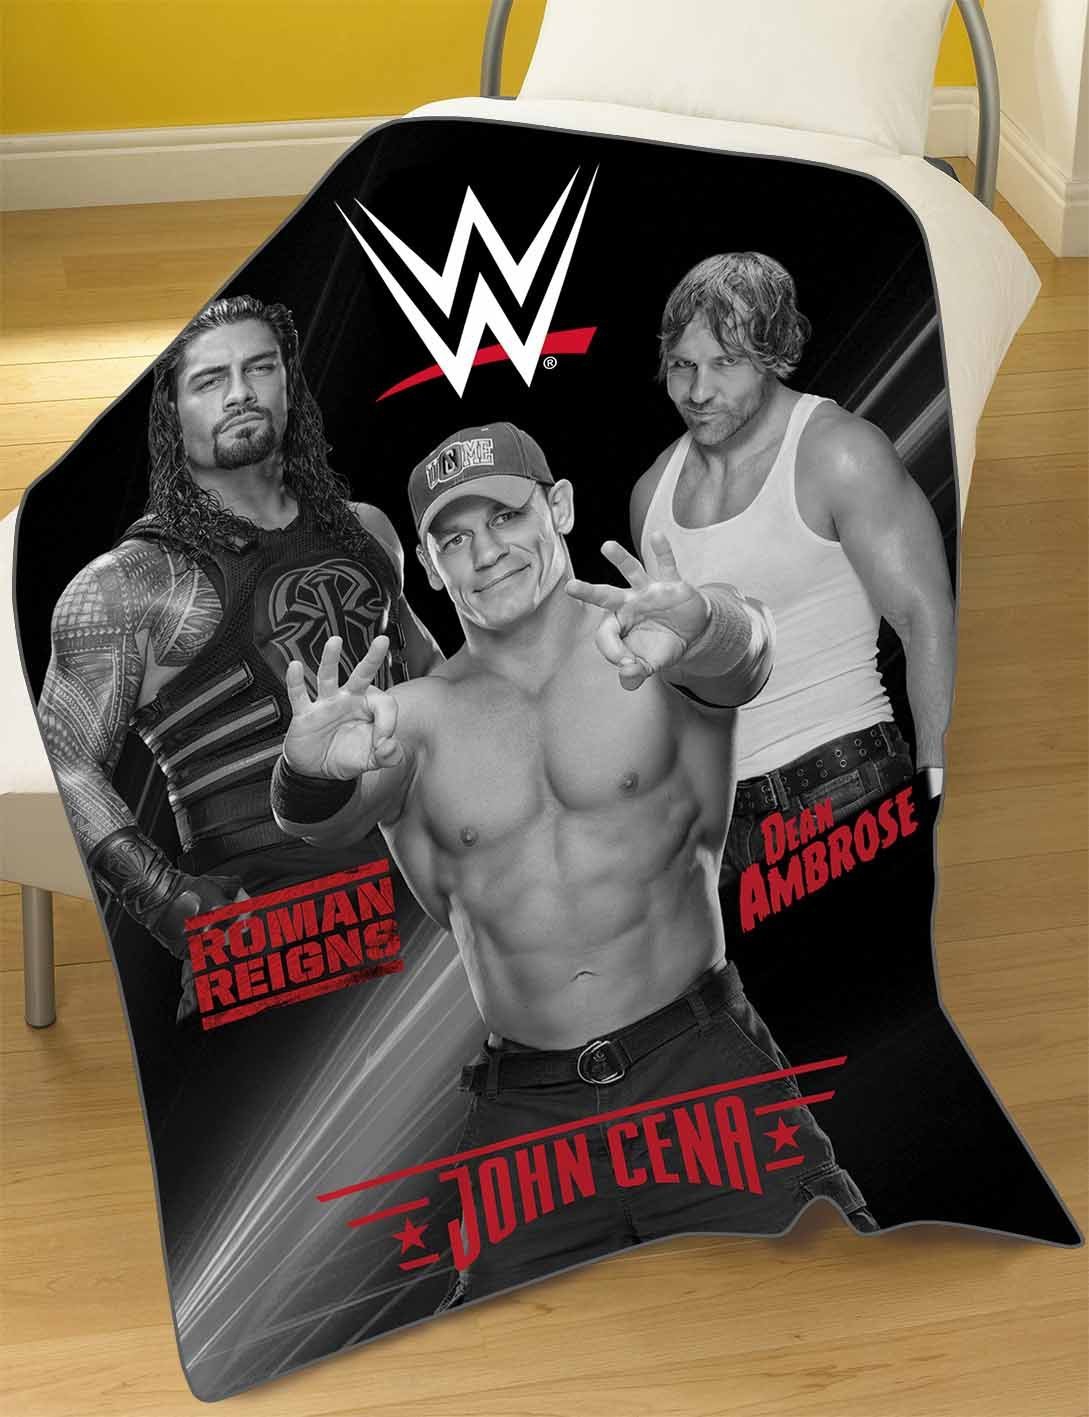 WWE 'Stars' Rdj Panel Fleece Blanket Throw